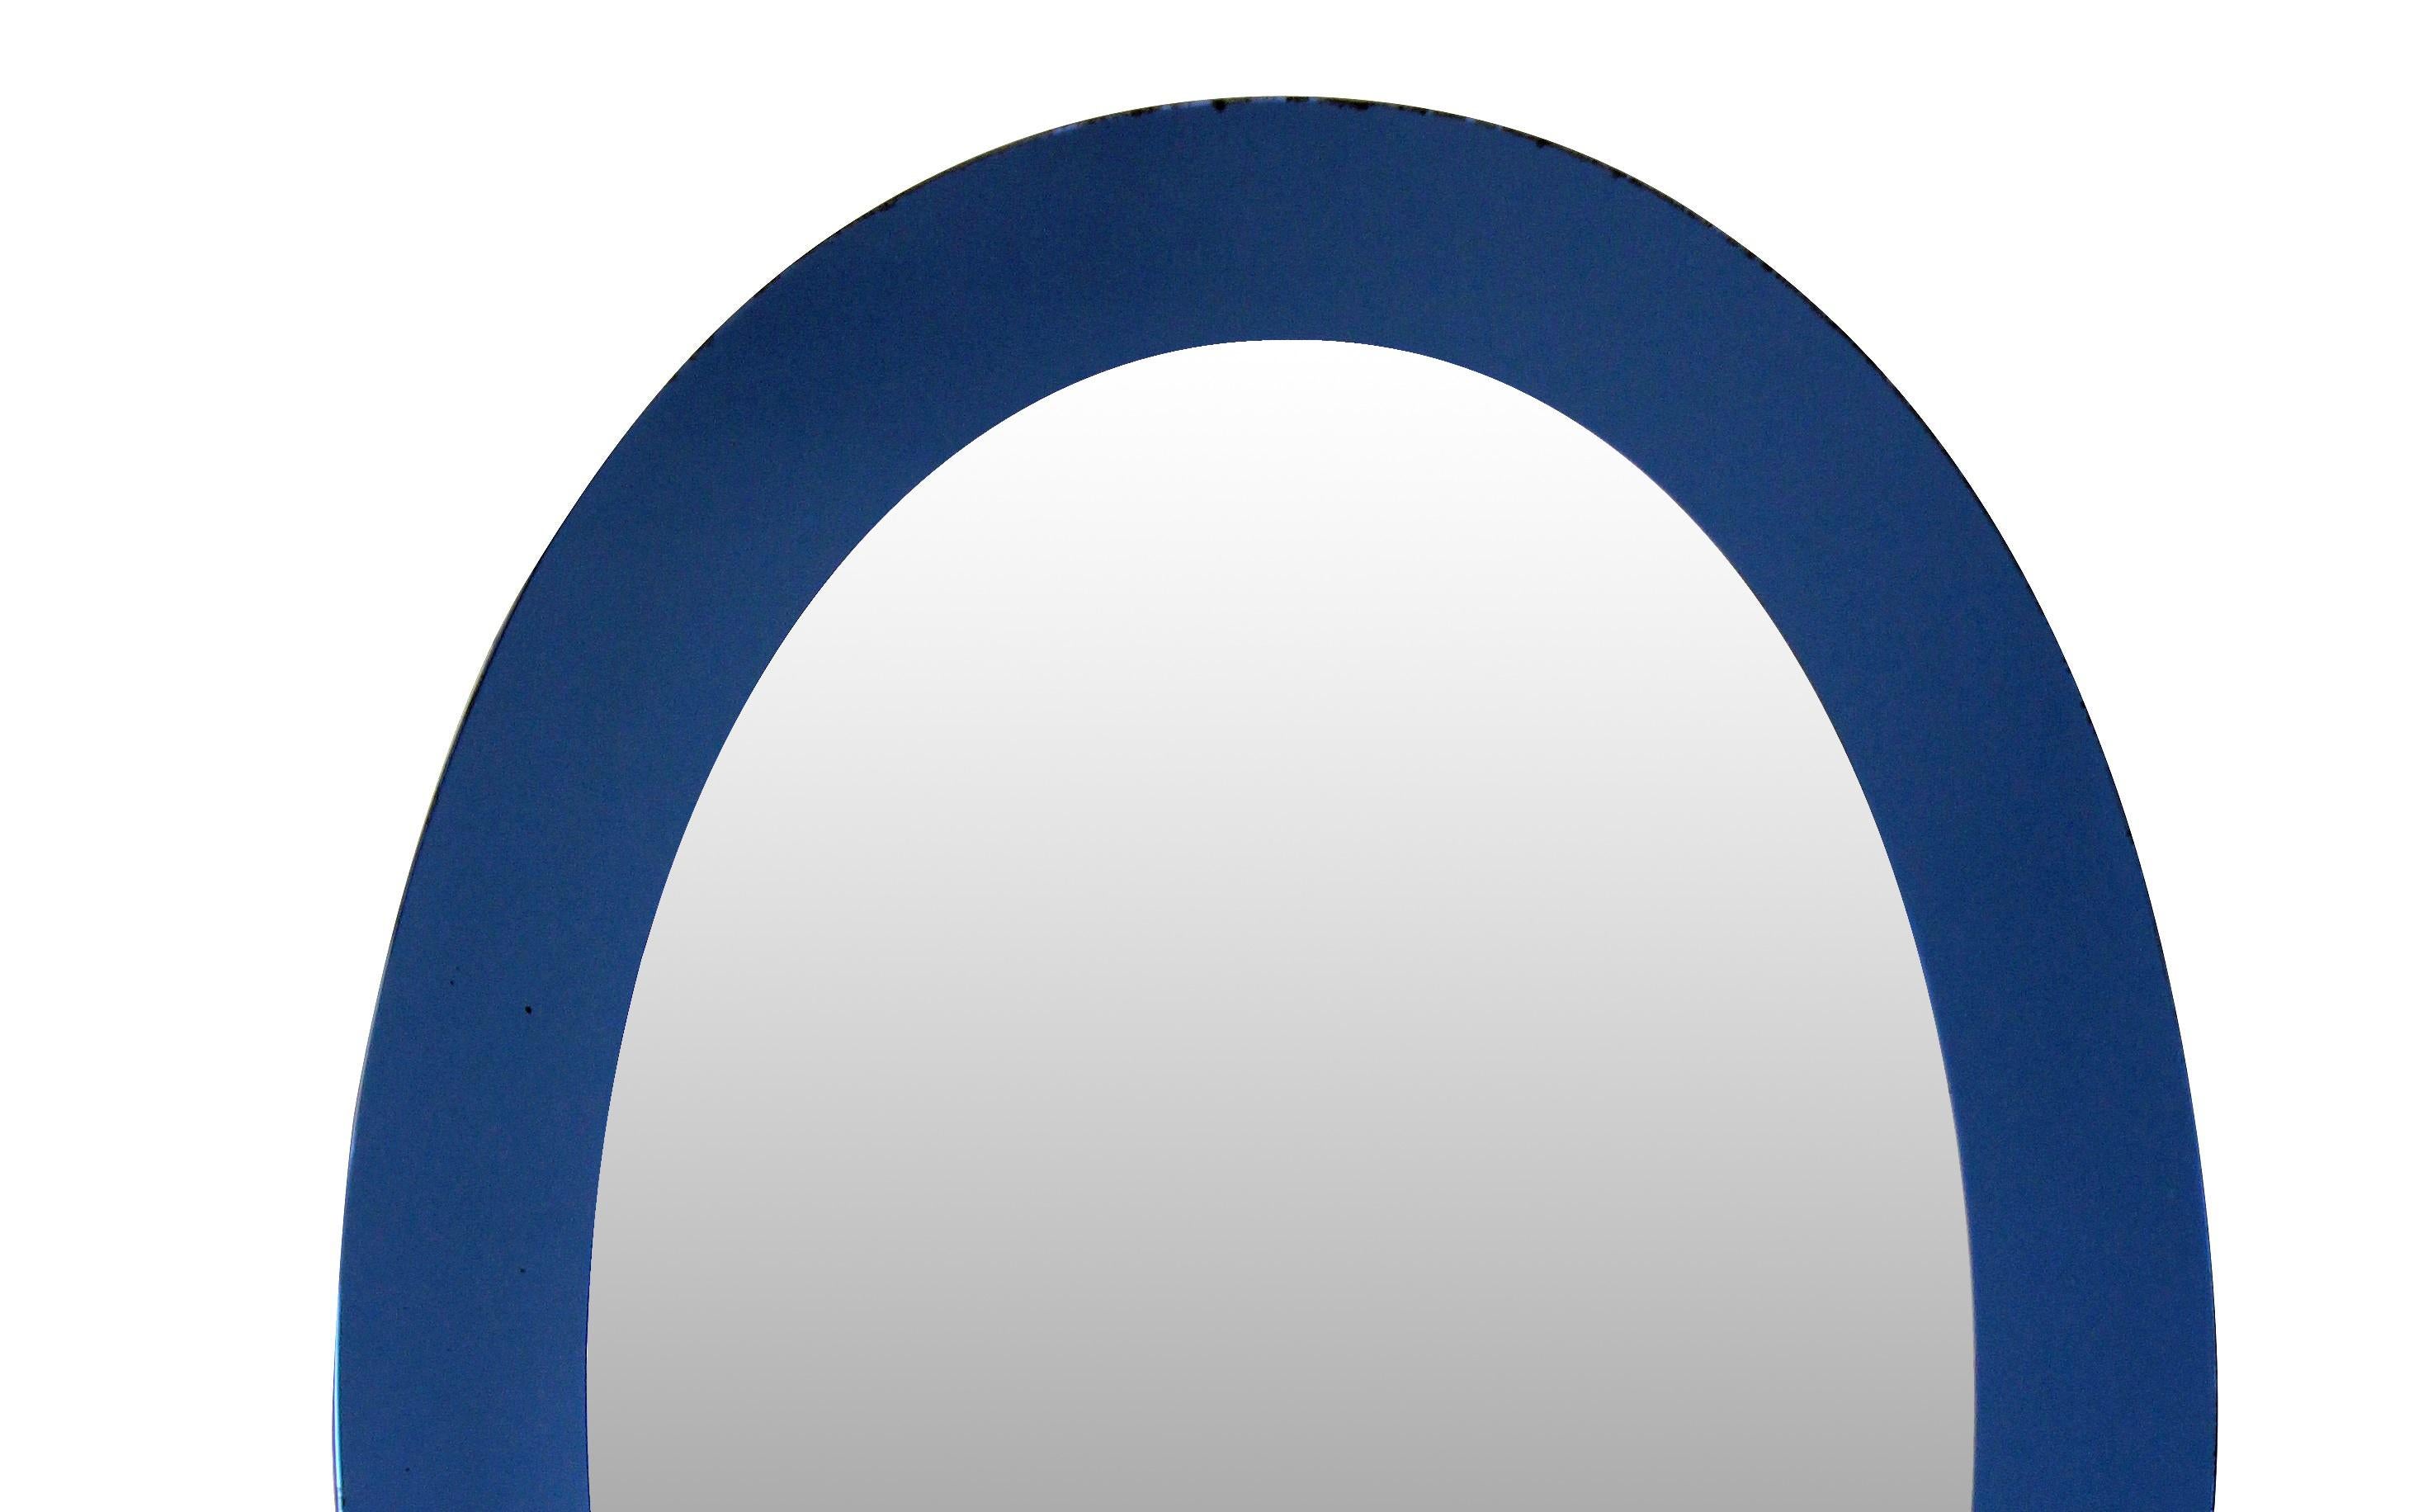 An Italian oval mirror with a blue border.